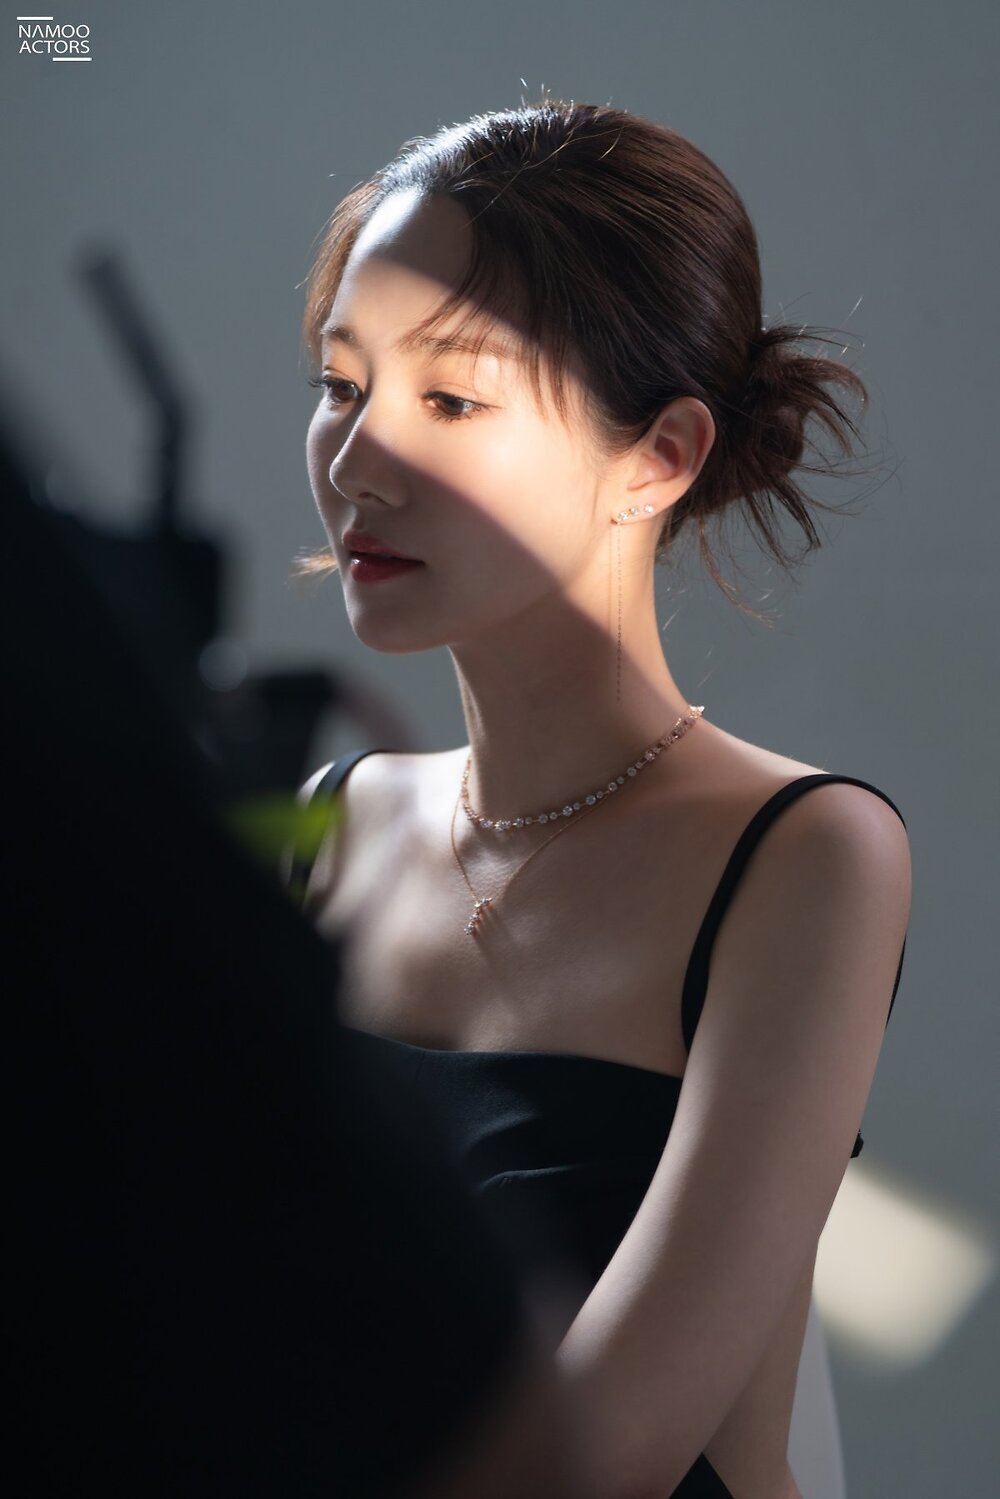 박민영 - 제이에스티나 광고촬영 비하인드